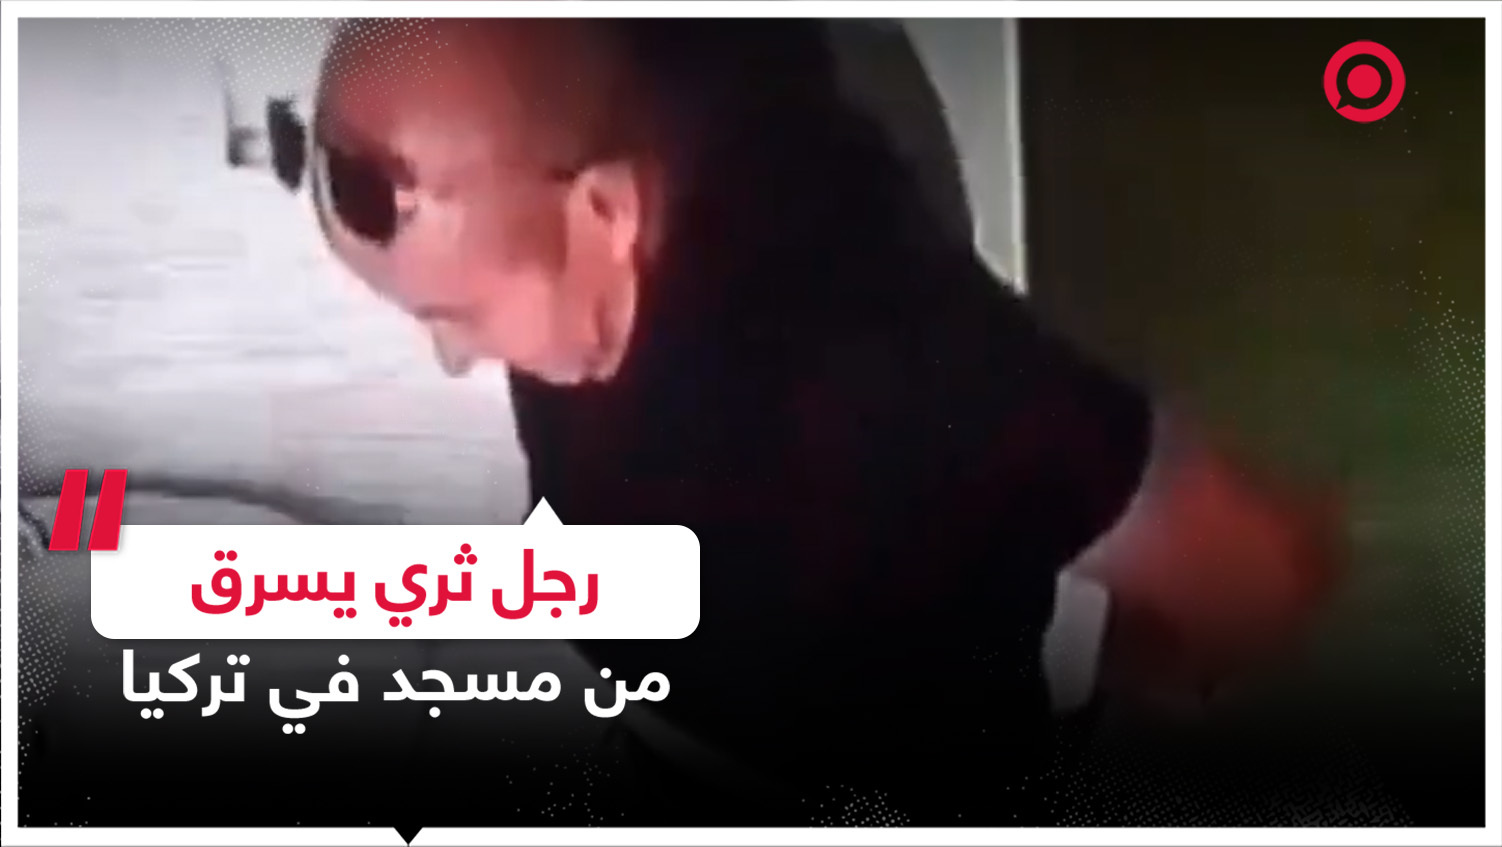 كاميرات المراقبة توثق قيام رجل بسرقة علبة الصابون من أحد مساجد تركيا